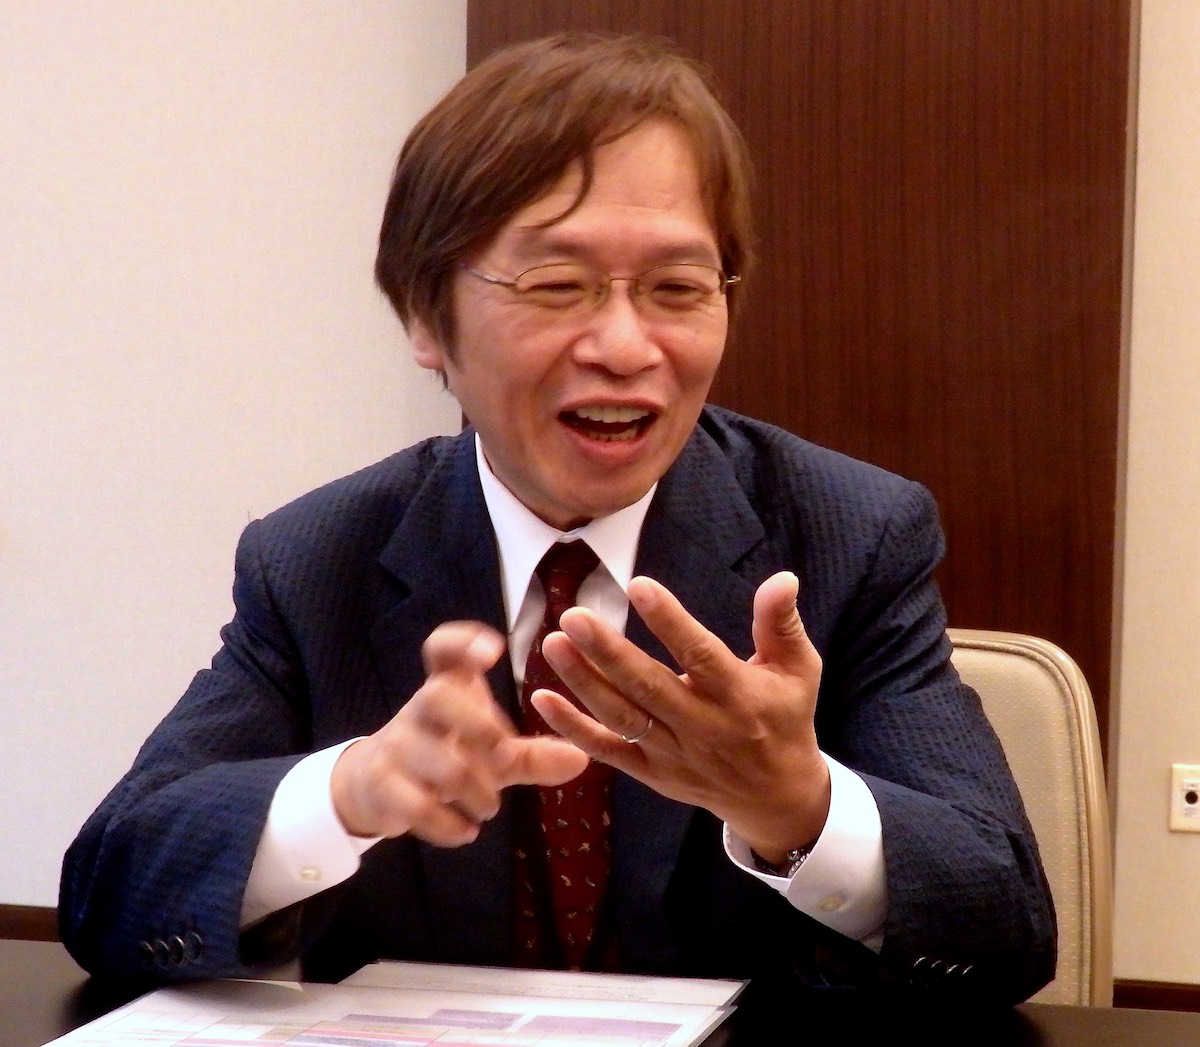 Katsuyuki Sumizawa sitting at a table, laughing and gesturing with both hands.